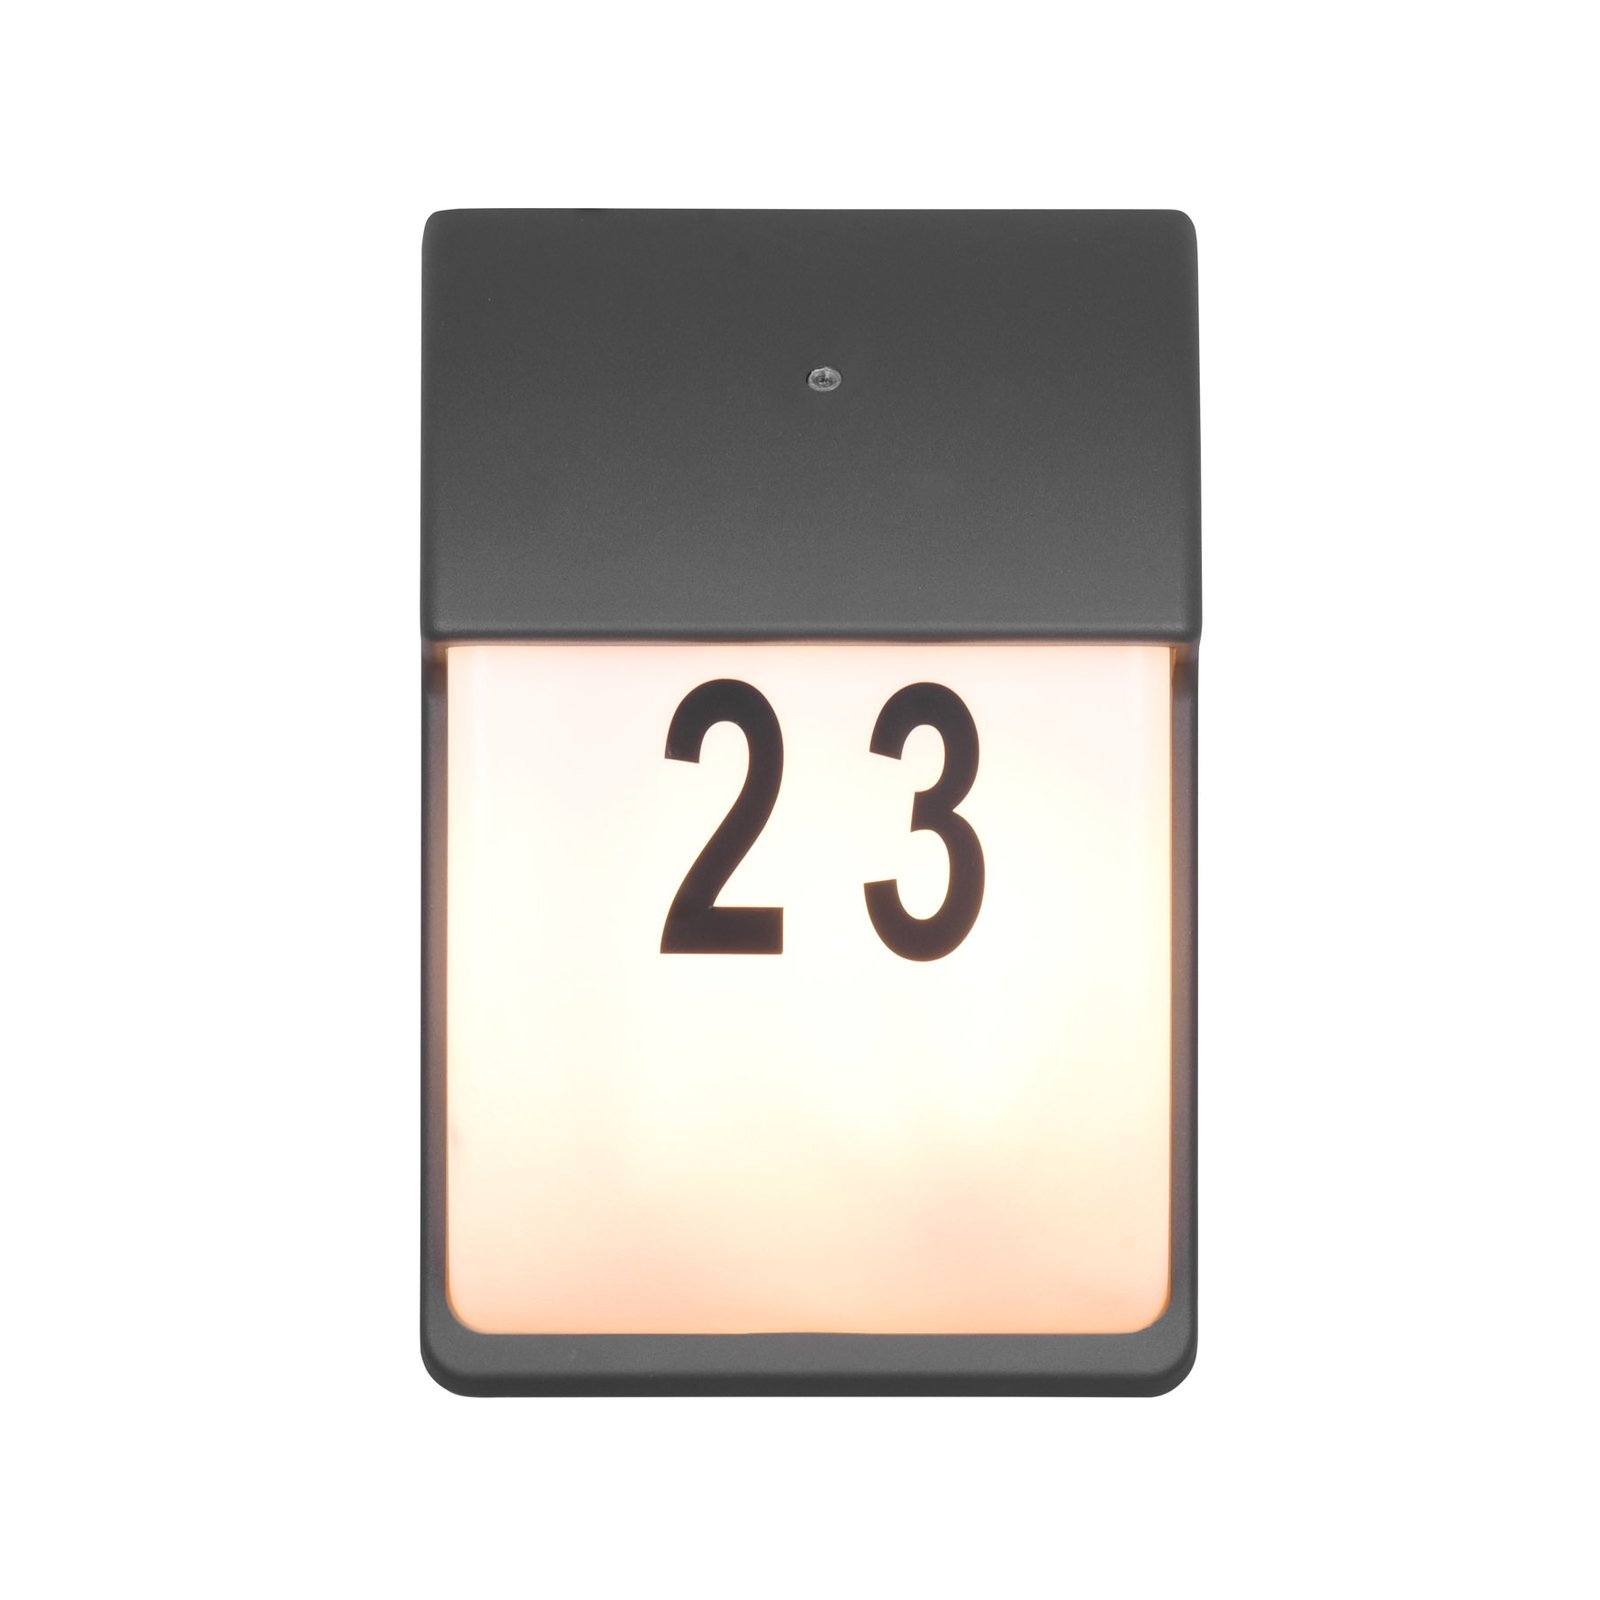 Mersey huisnummer lamp met schemersensor